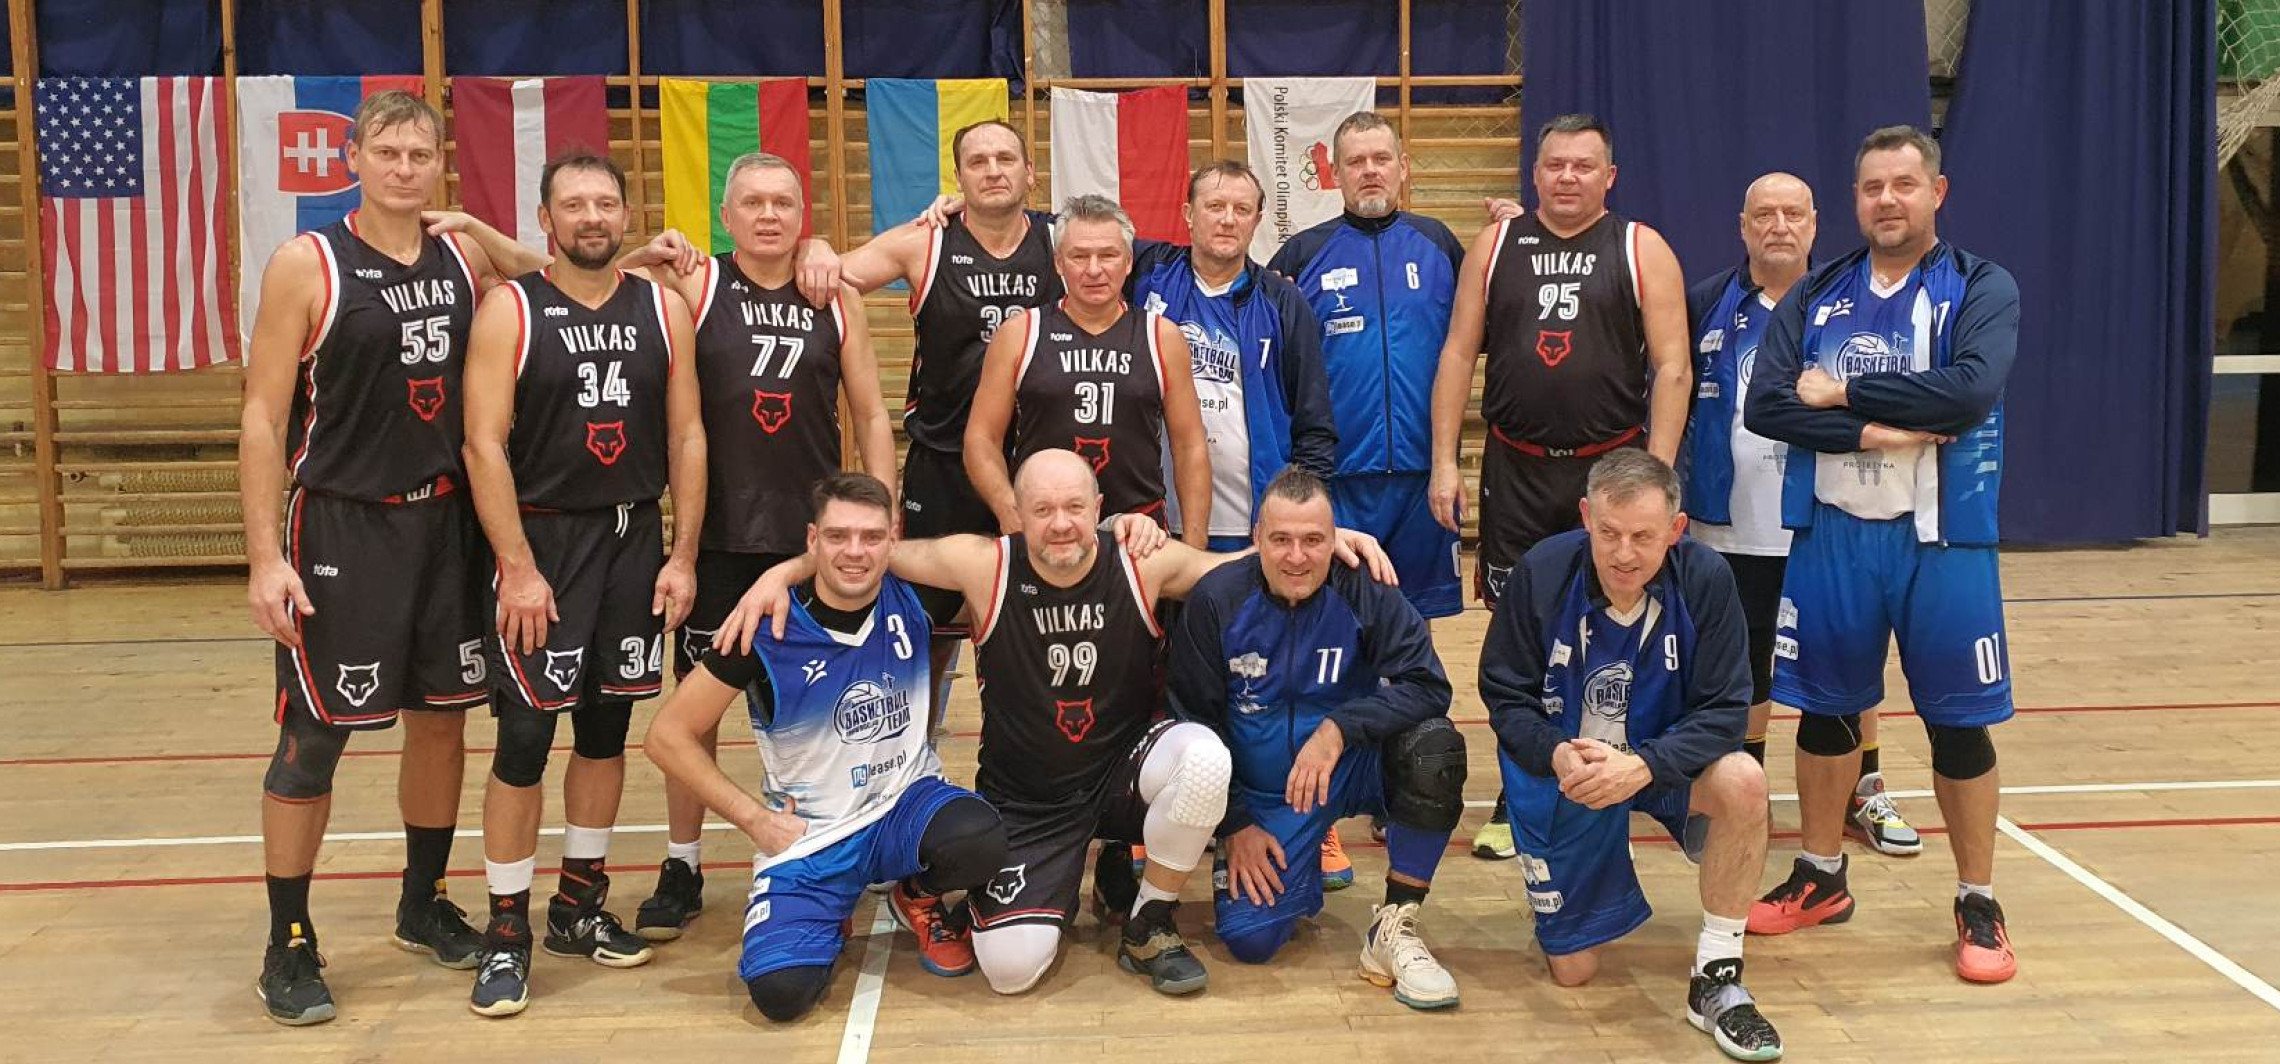 Inowrocław - Oldboje z Inowrocławia walczą o mistrzostwo